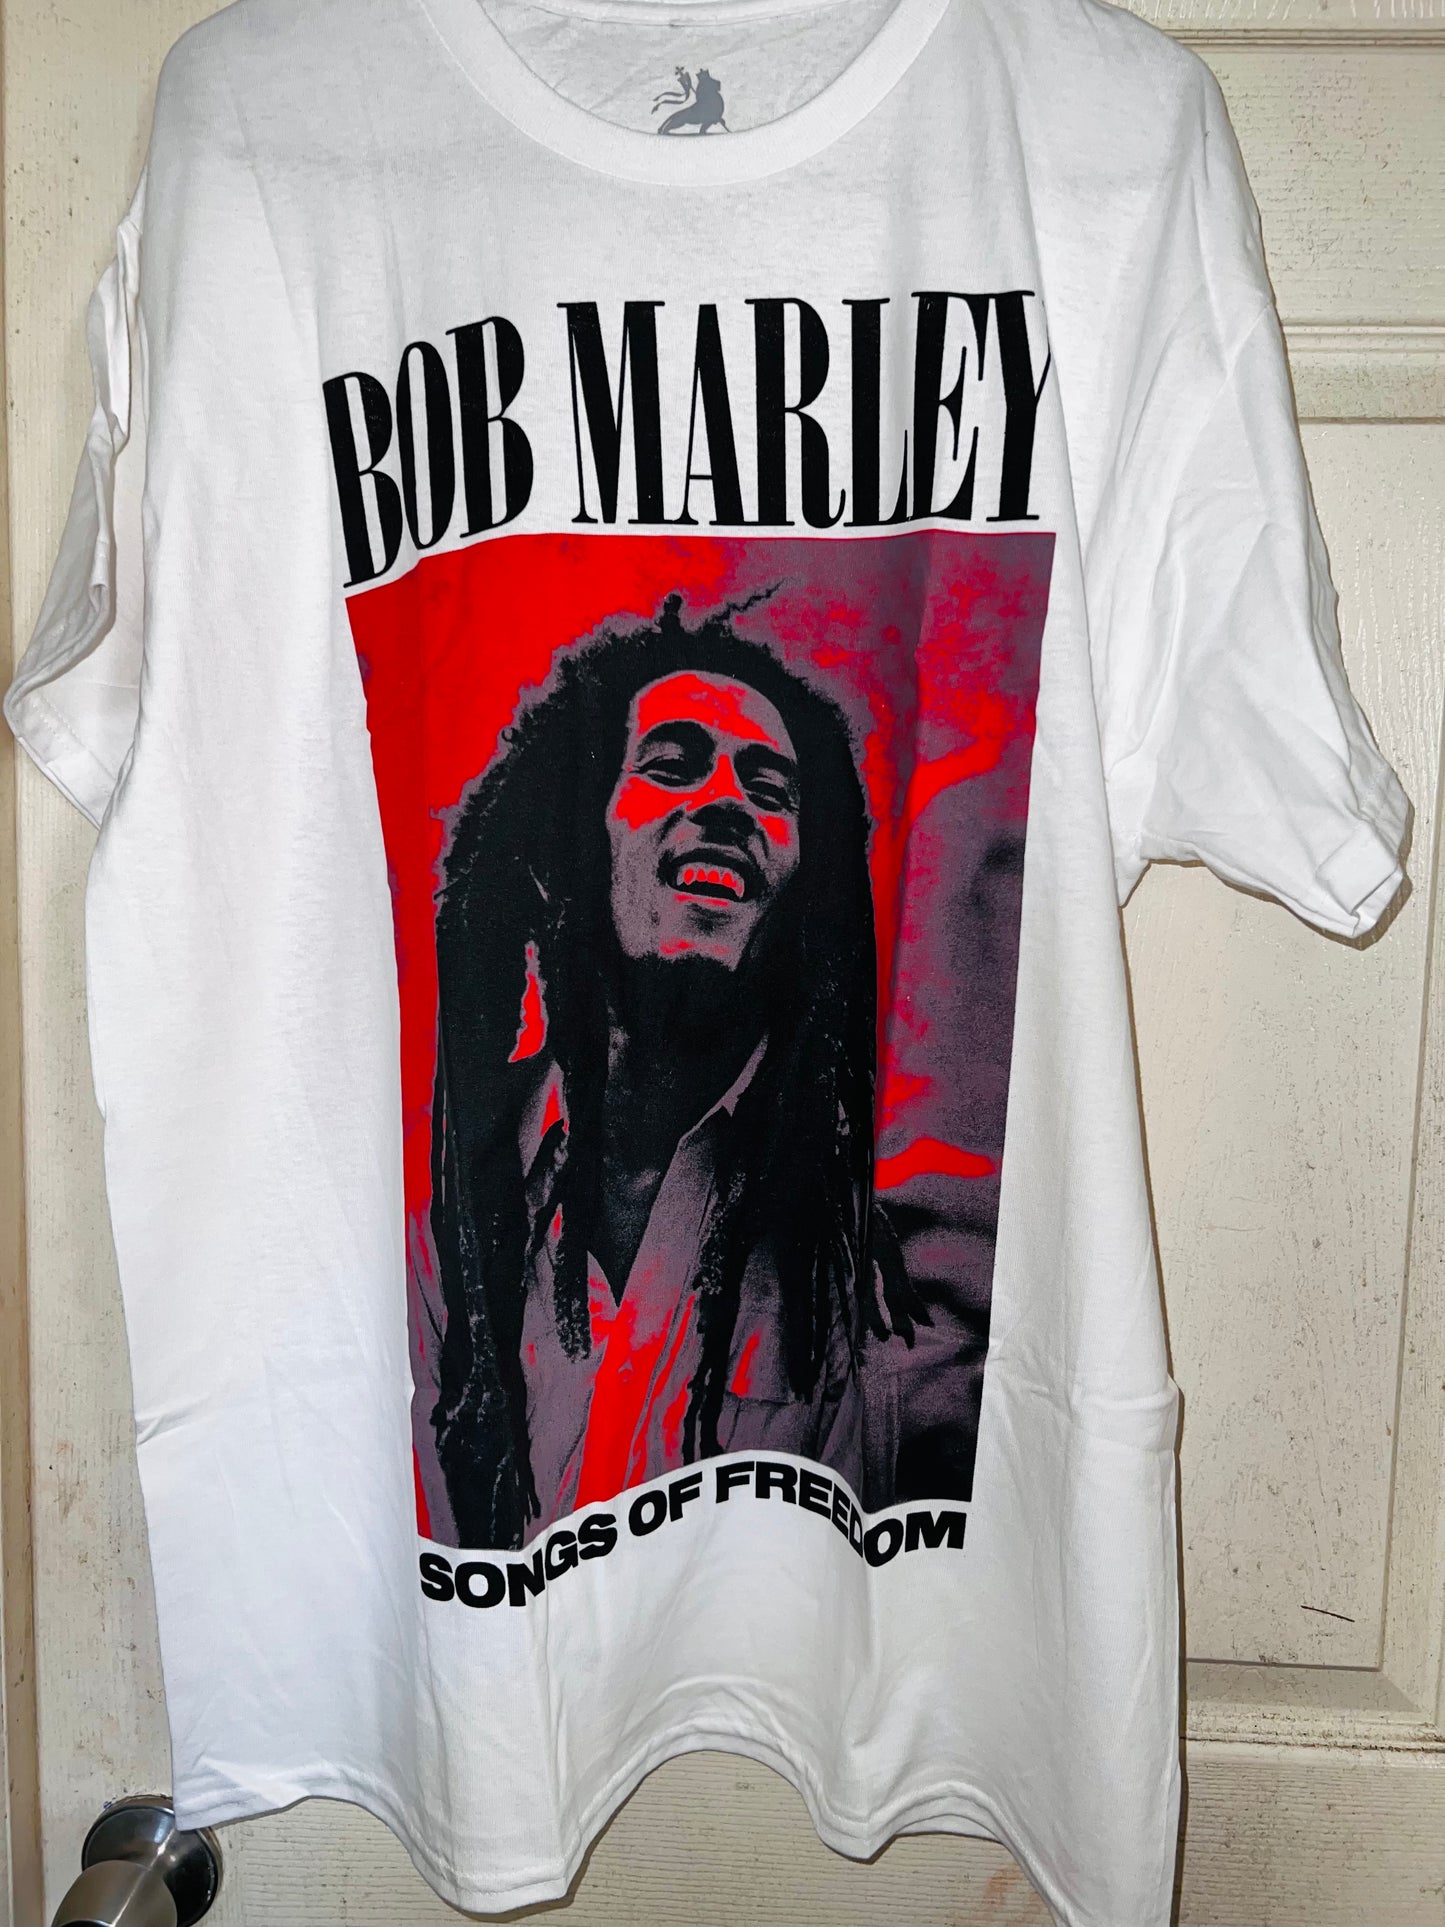 Bob Marley Songs of Freedom Oversized Tee